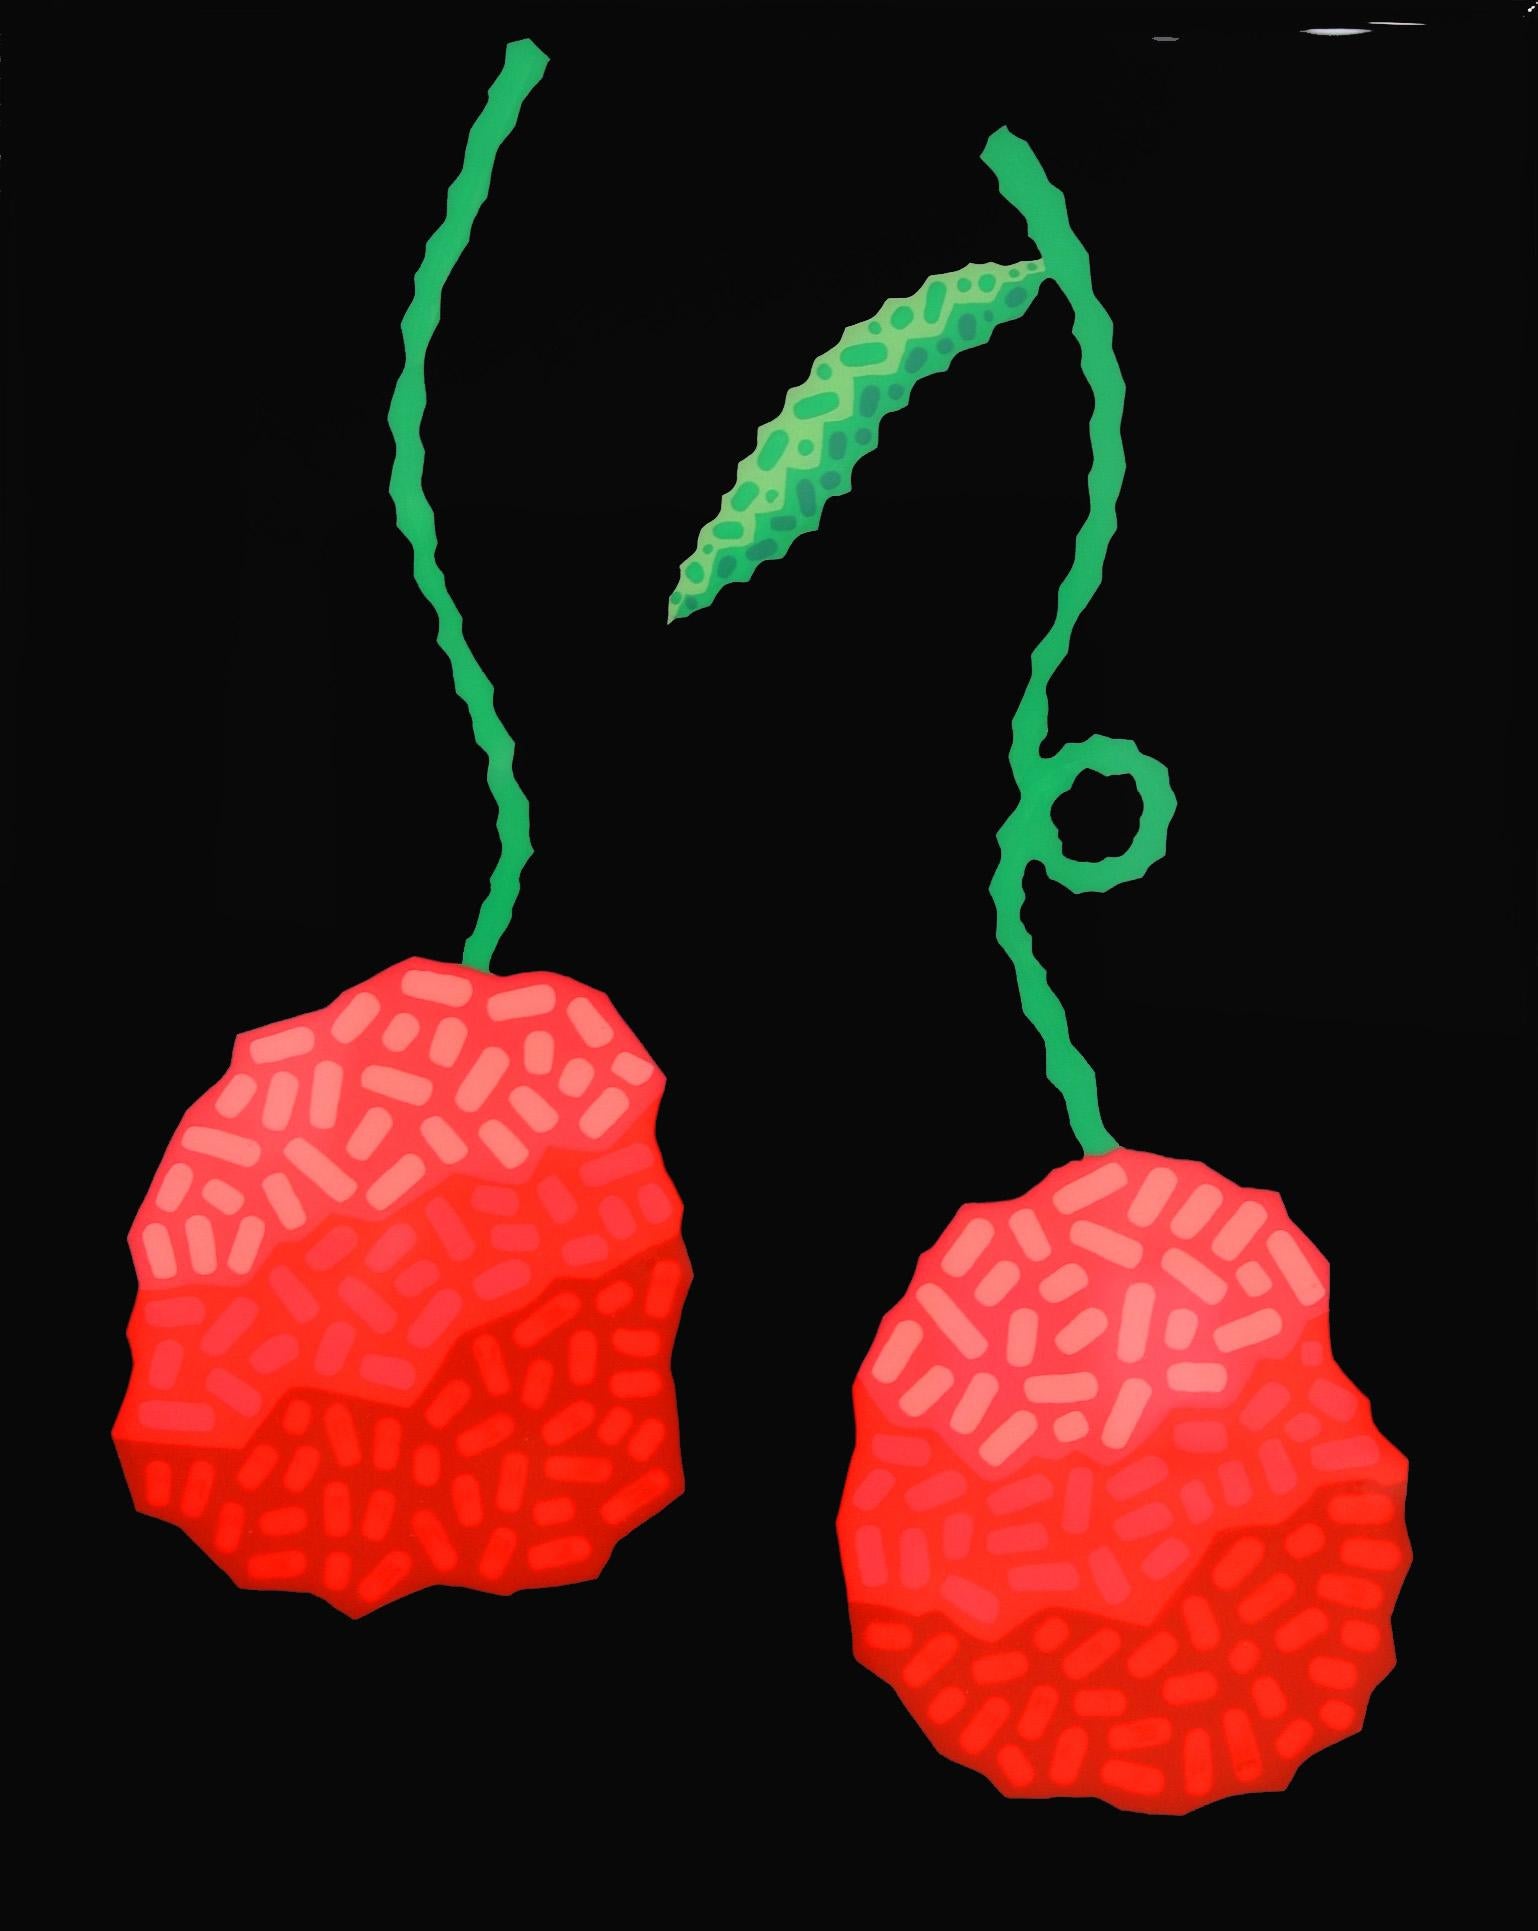 Schwarze Kirschen – lebhafte rote Obst, Südwestlich inspiriertes Pop-Art-Gemälde